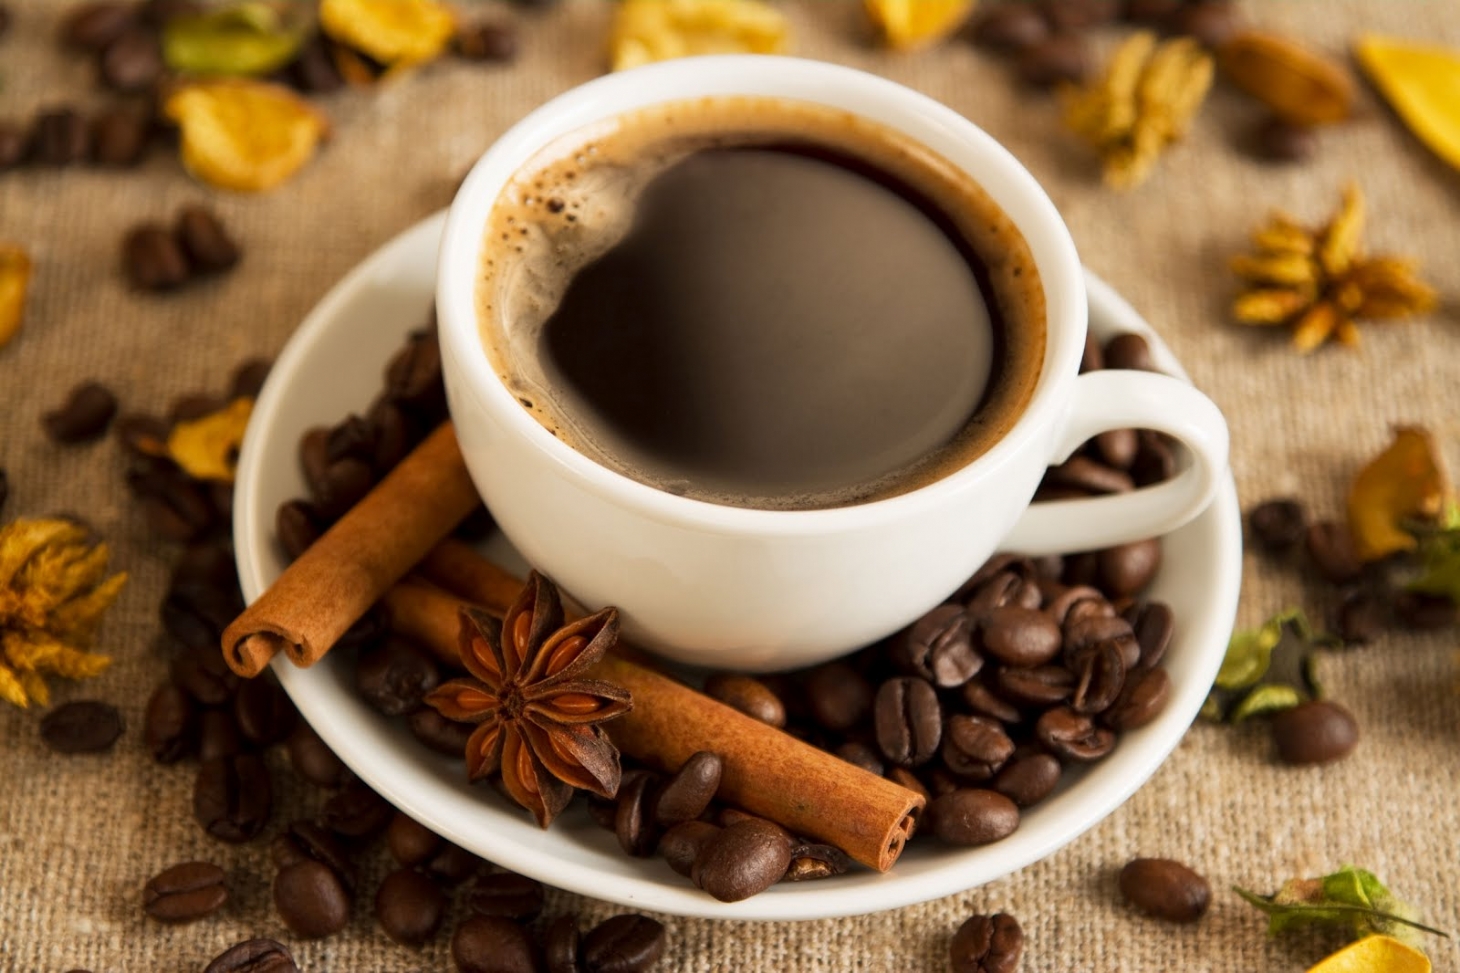 Excesso de café aumenta chance de pressão alta em pessoas predispostas | Jornal da Orla